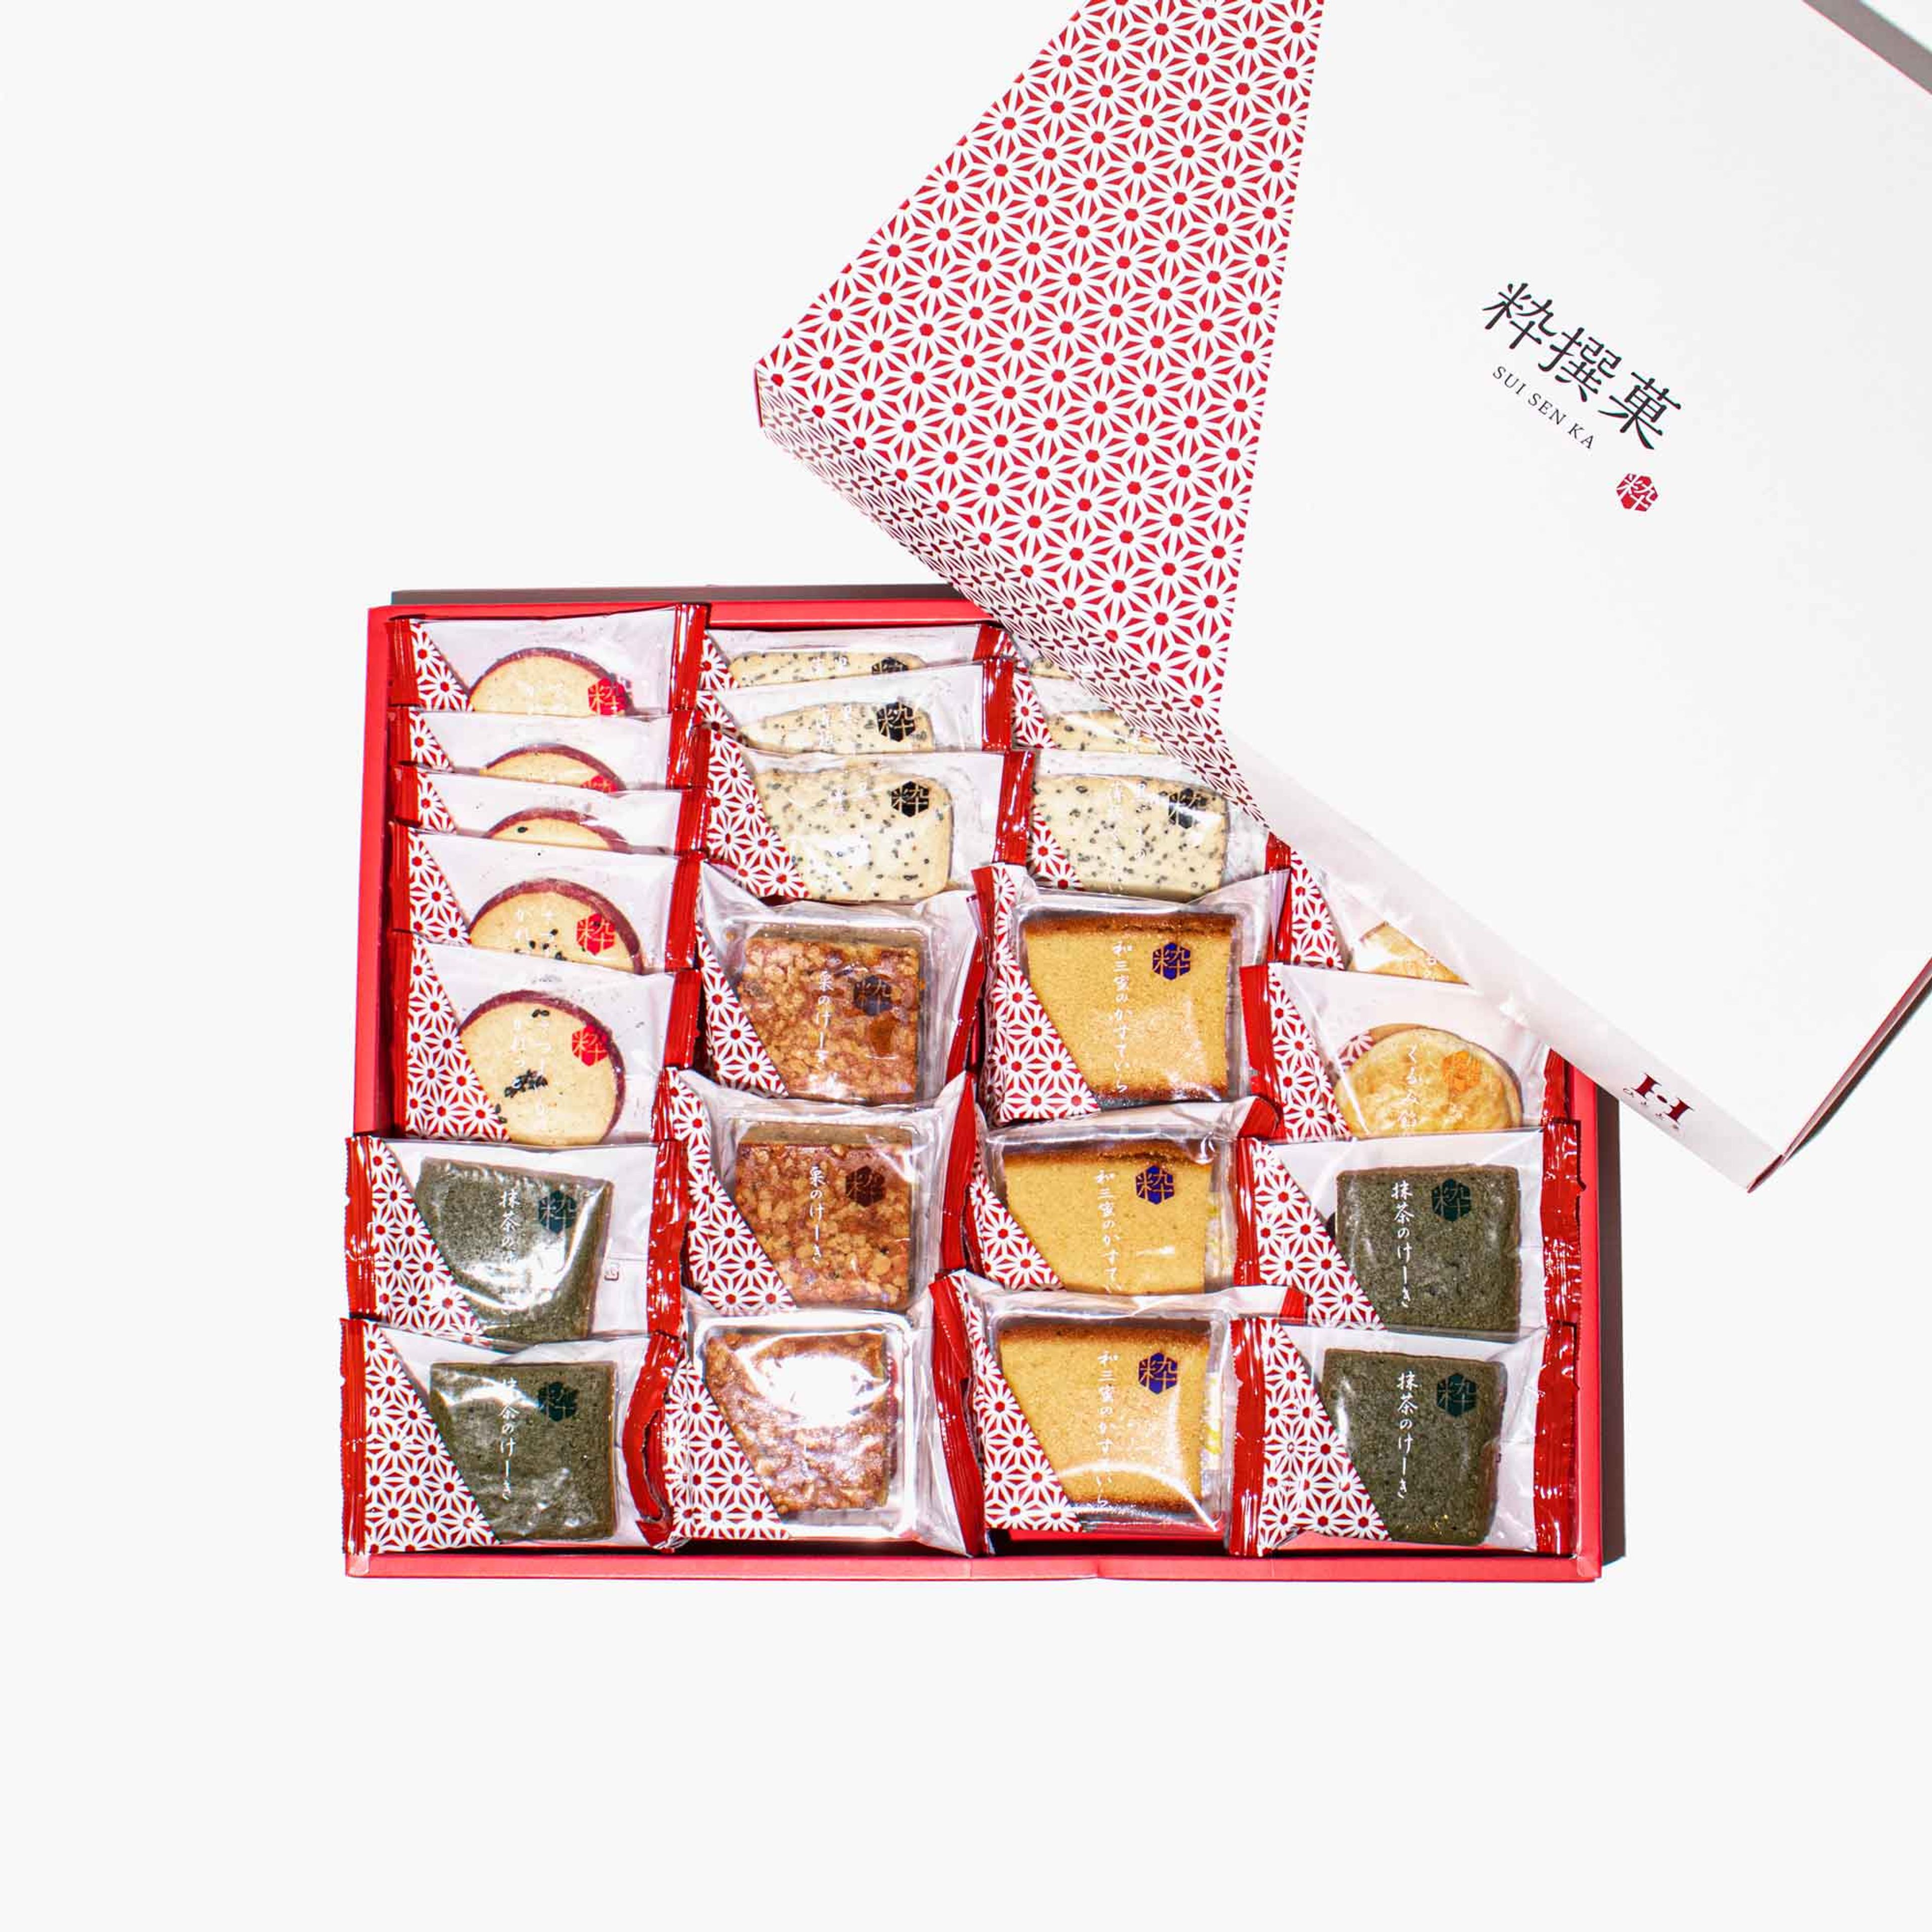 Japanese Baked Goods Box